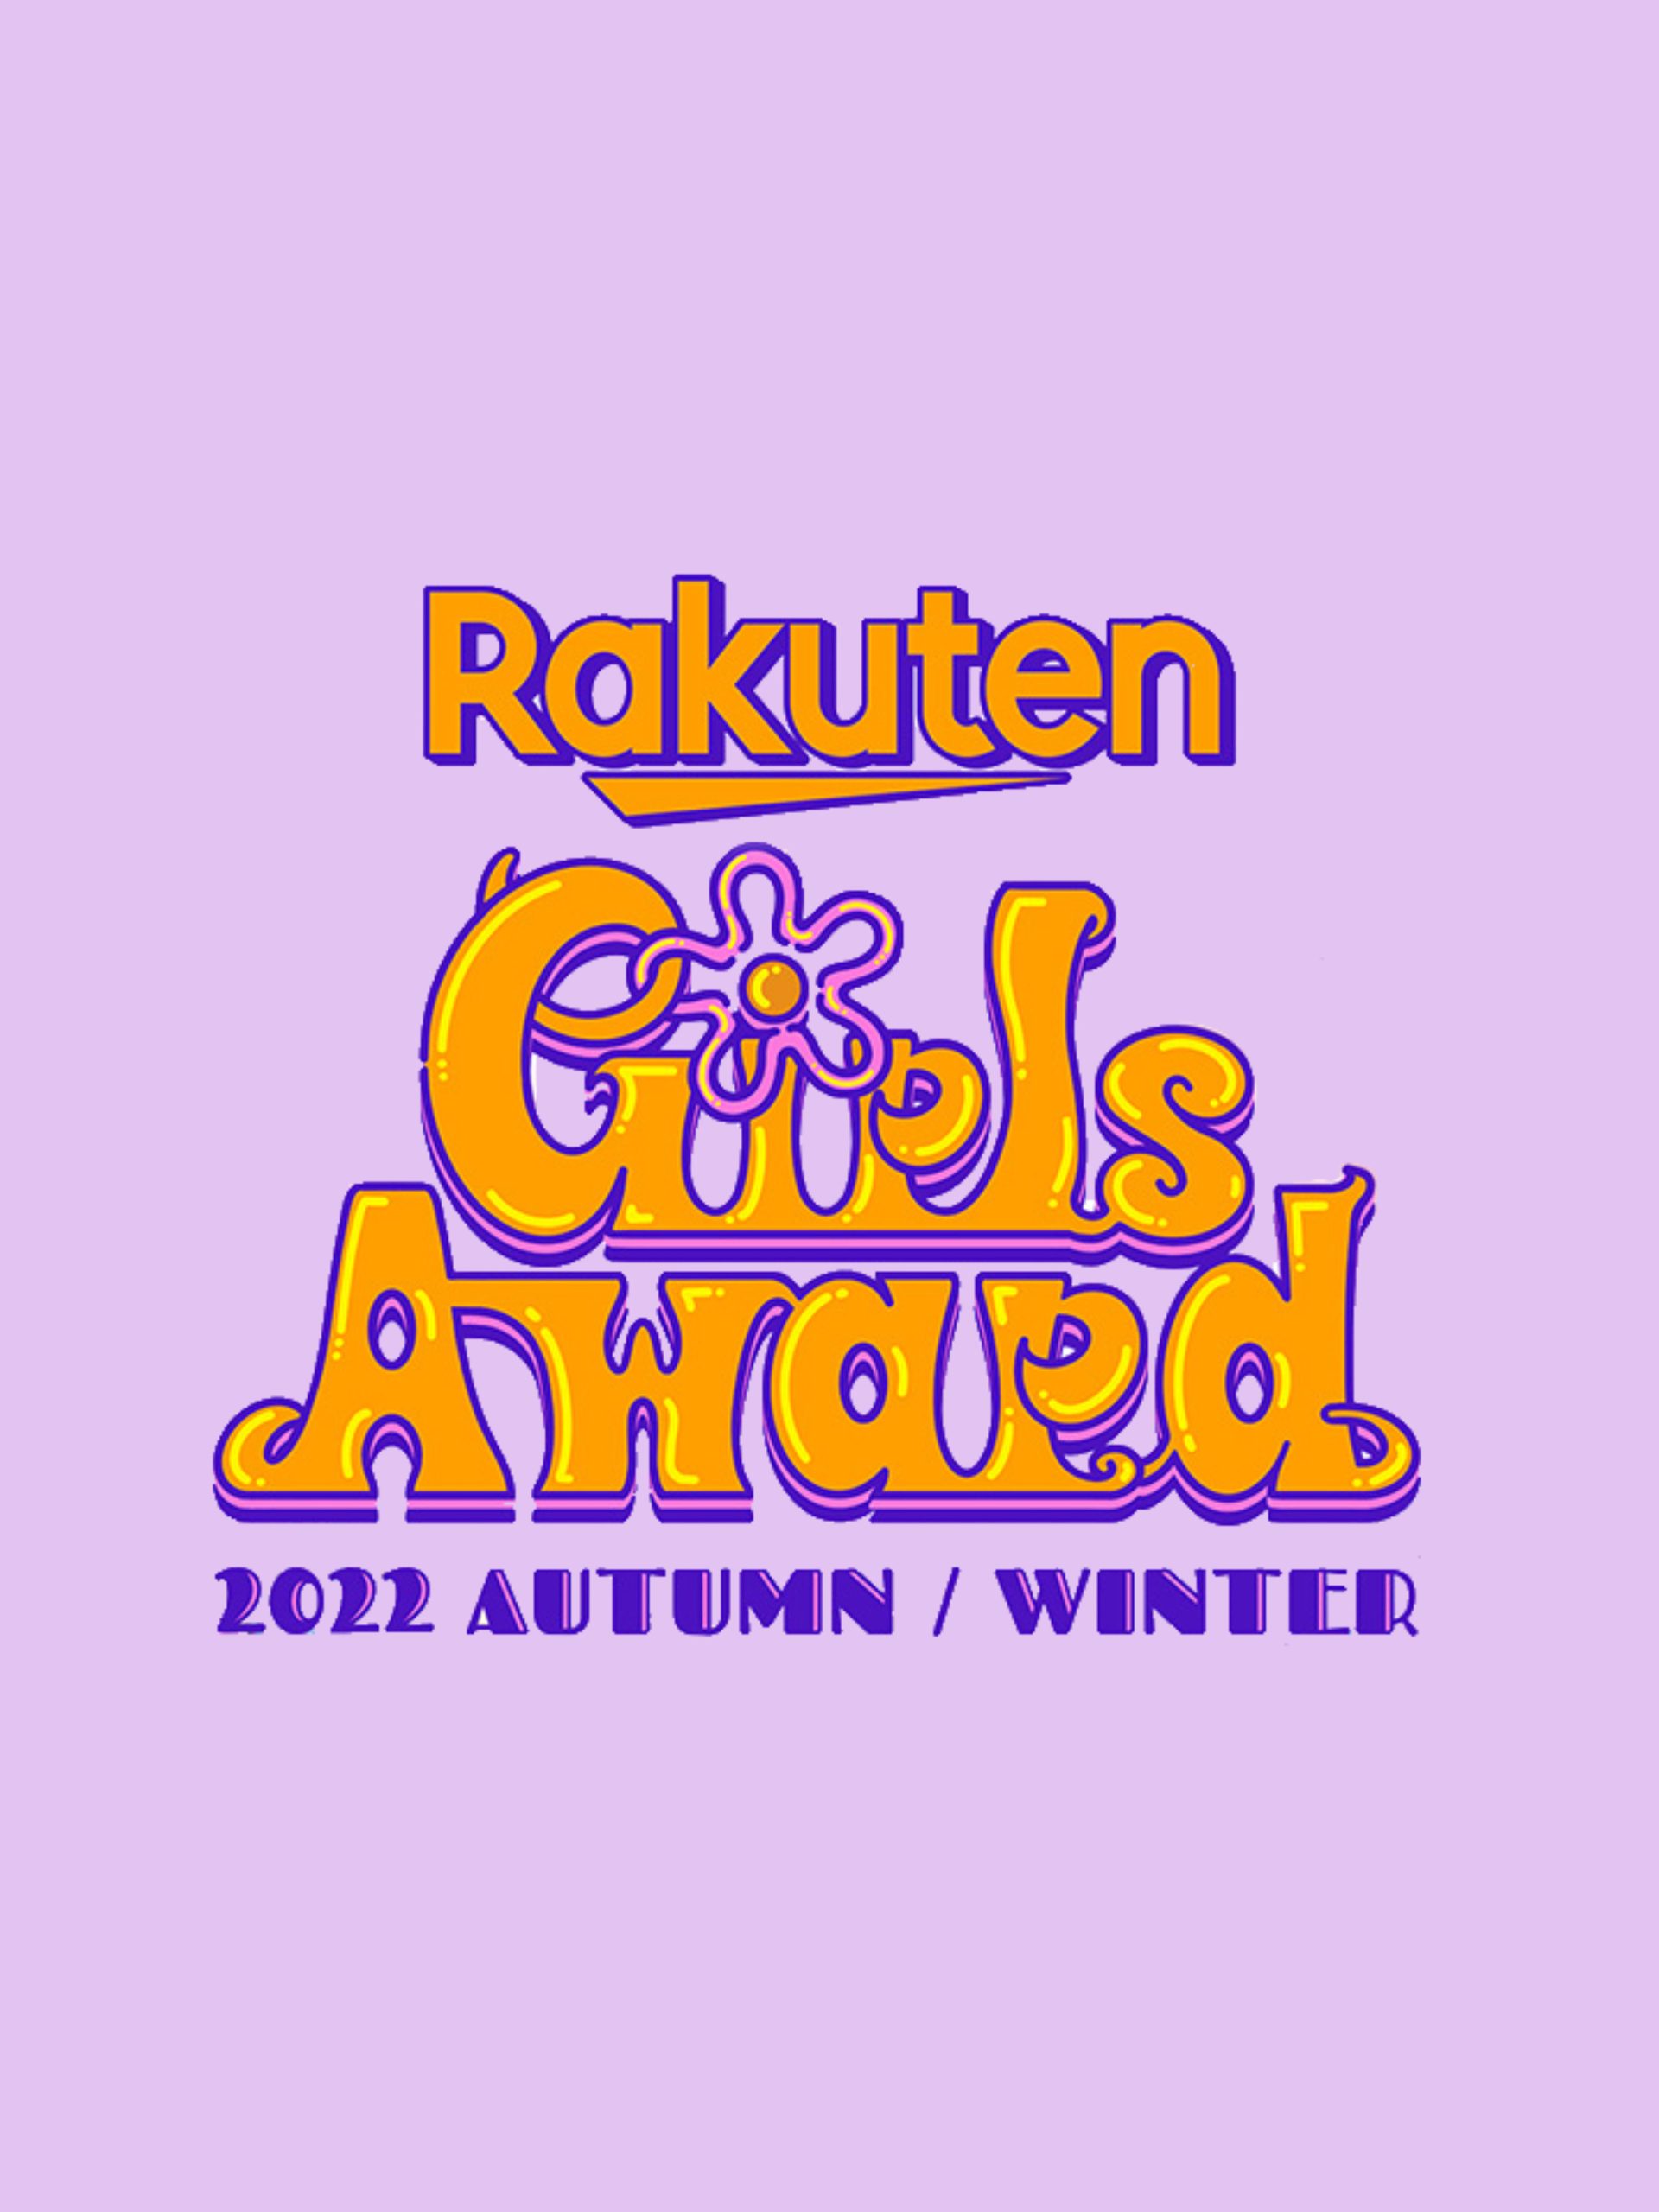 Rakuten GirlsAward 2022 AUTUMN/WINTER